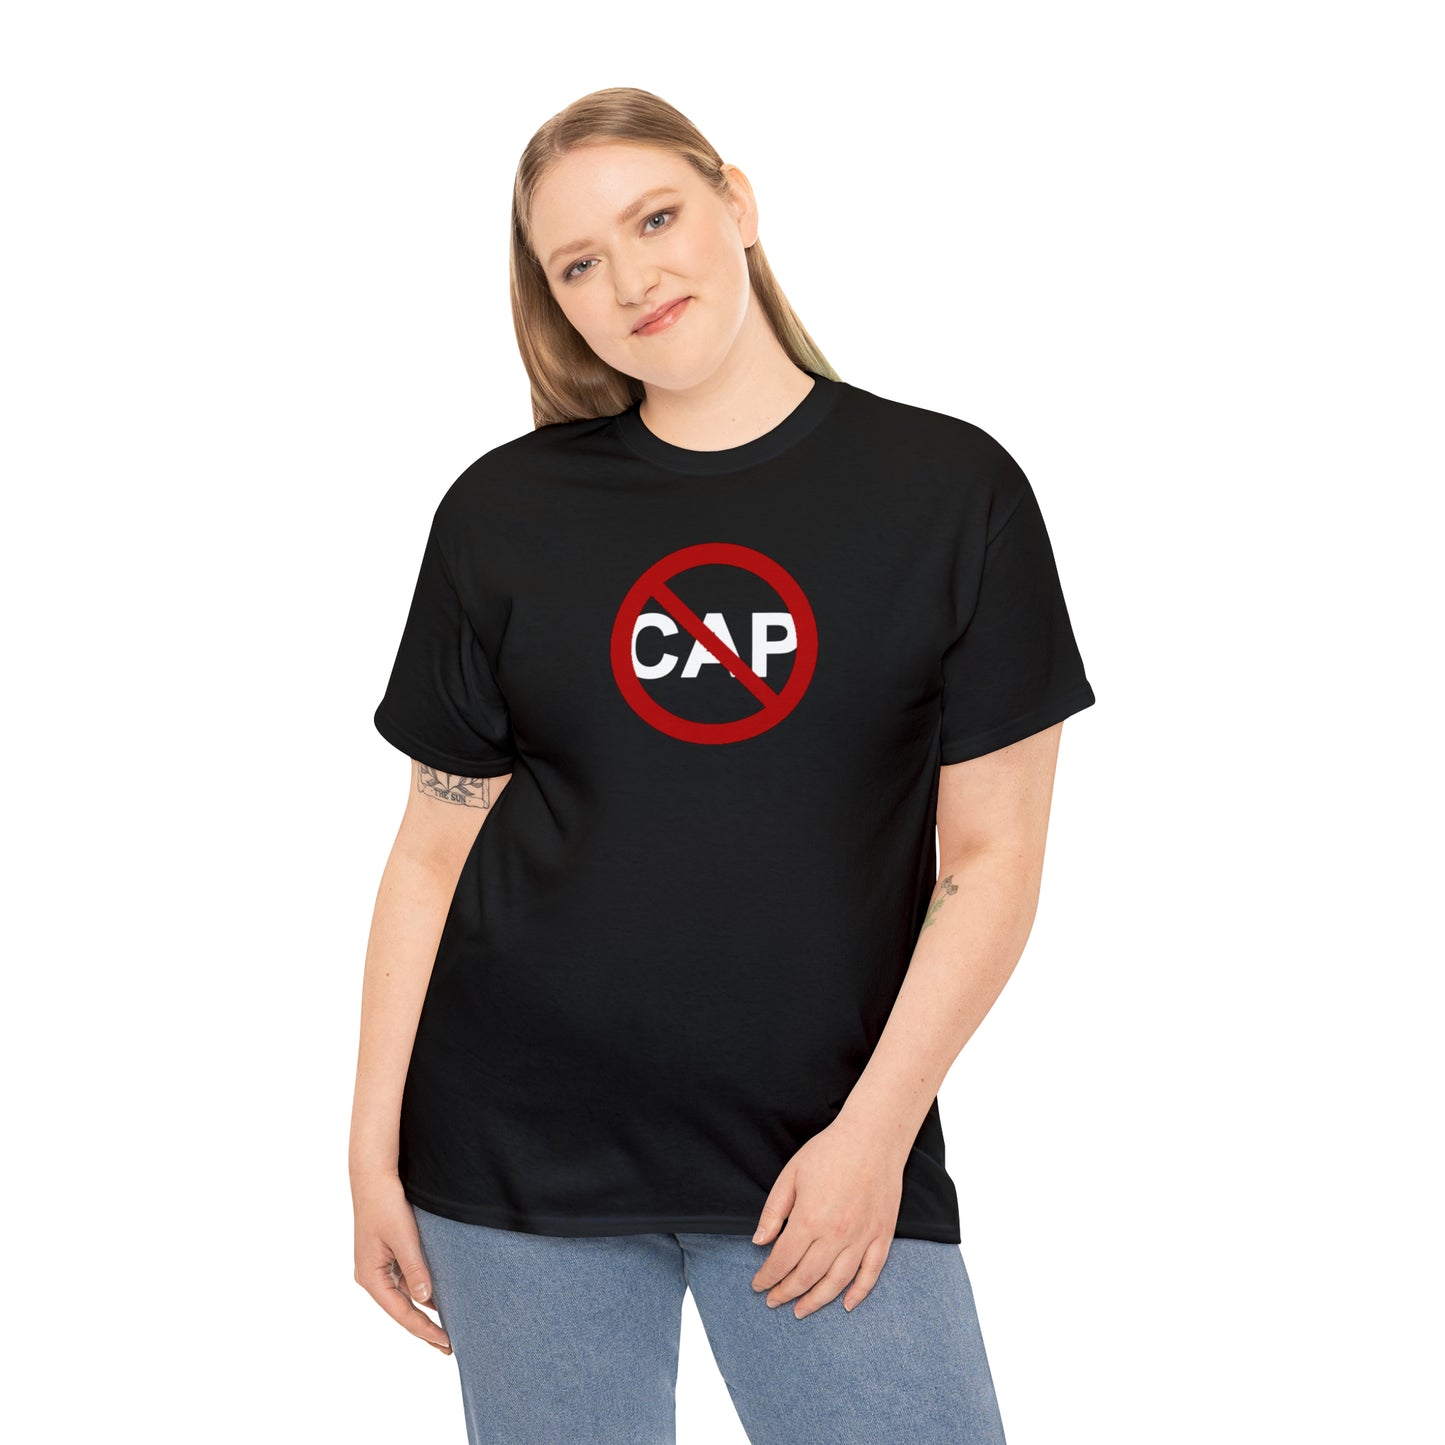 No Cap T-Shirt